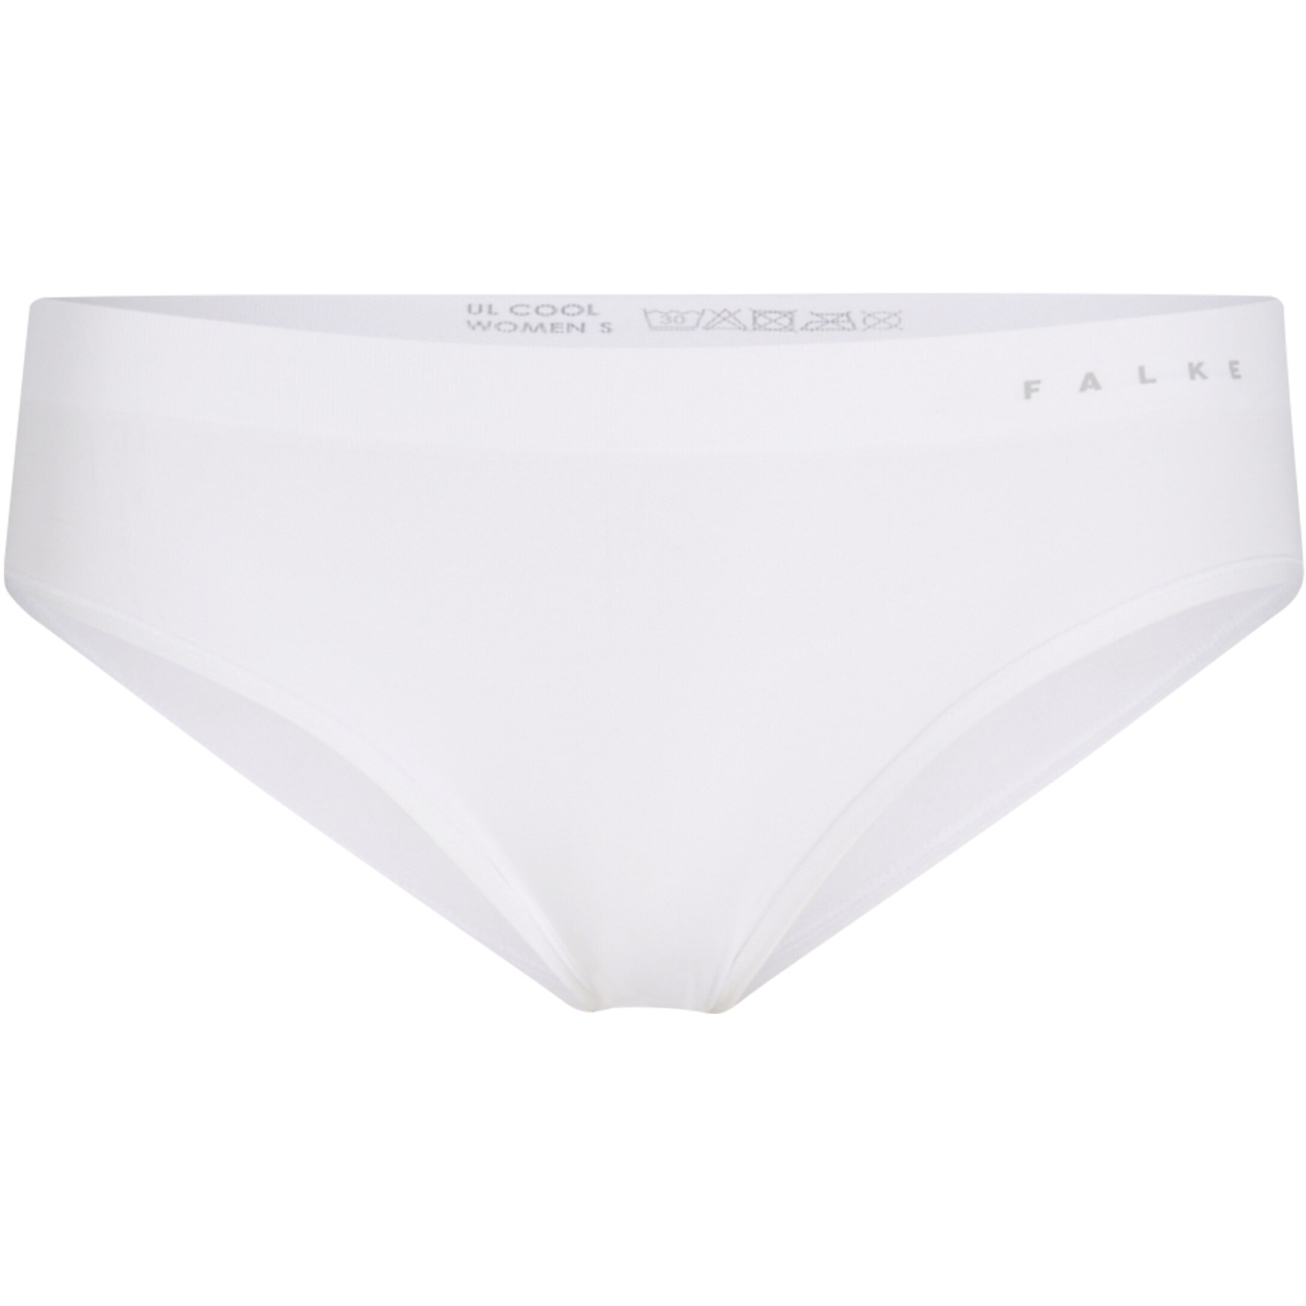 Produktbild von Falke Ultralight Cool Panties Damen - weiß 2860